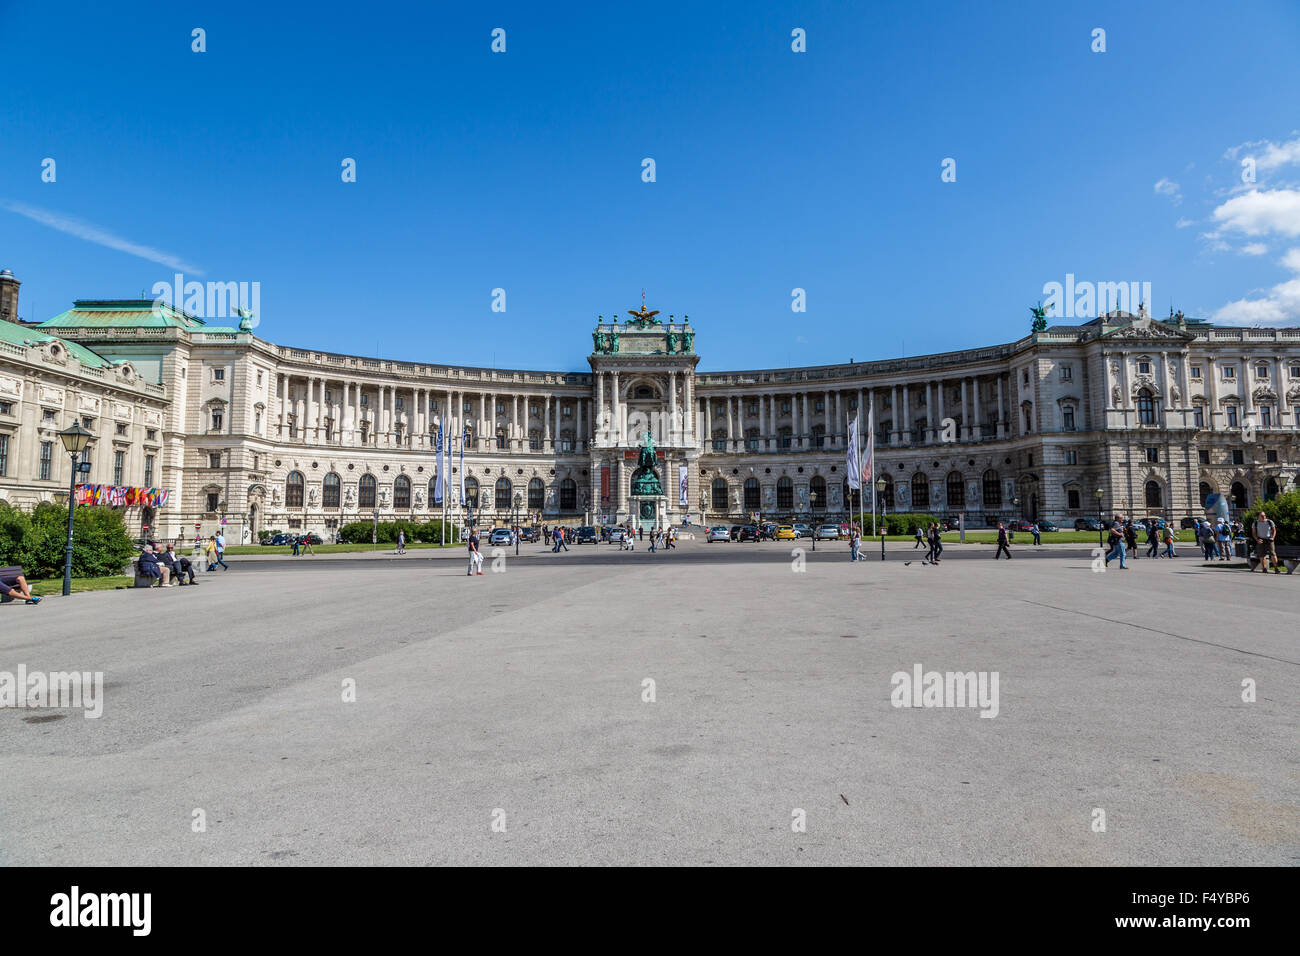 Wien - 22 Juli: Hofburg Palace ist beherbergt einige der mächtigsten Menschen in der europäischen und österreichischen Geschichte, einschließlich der Stockfoto